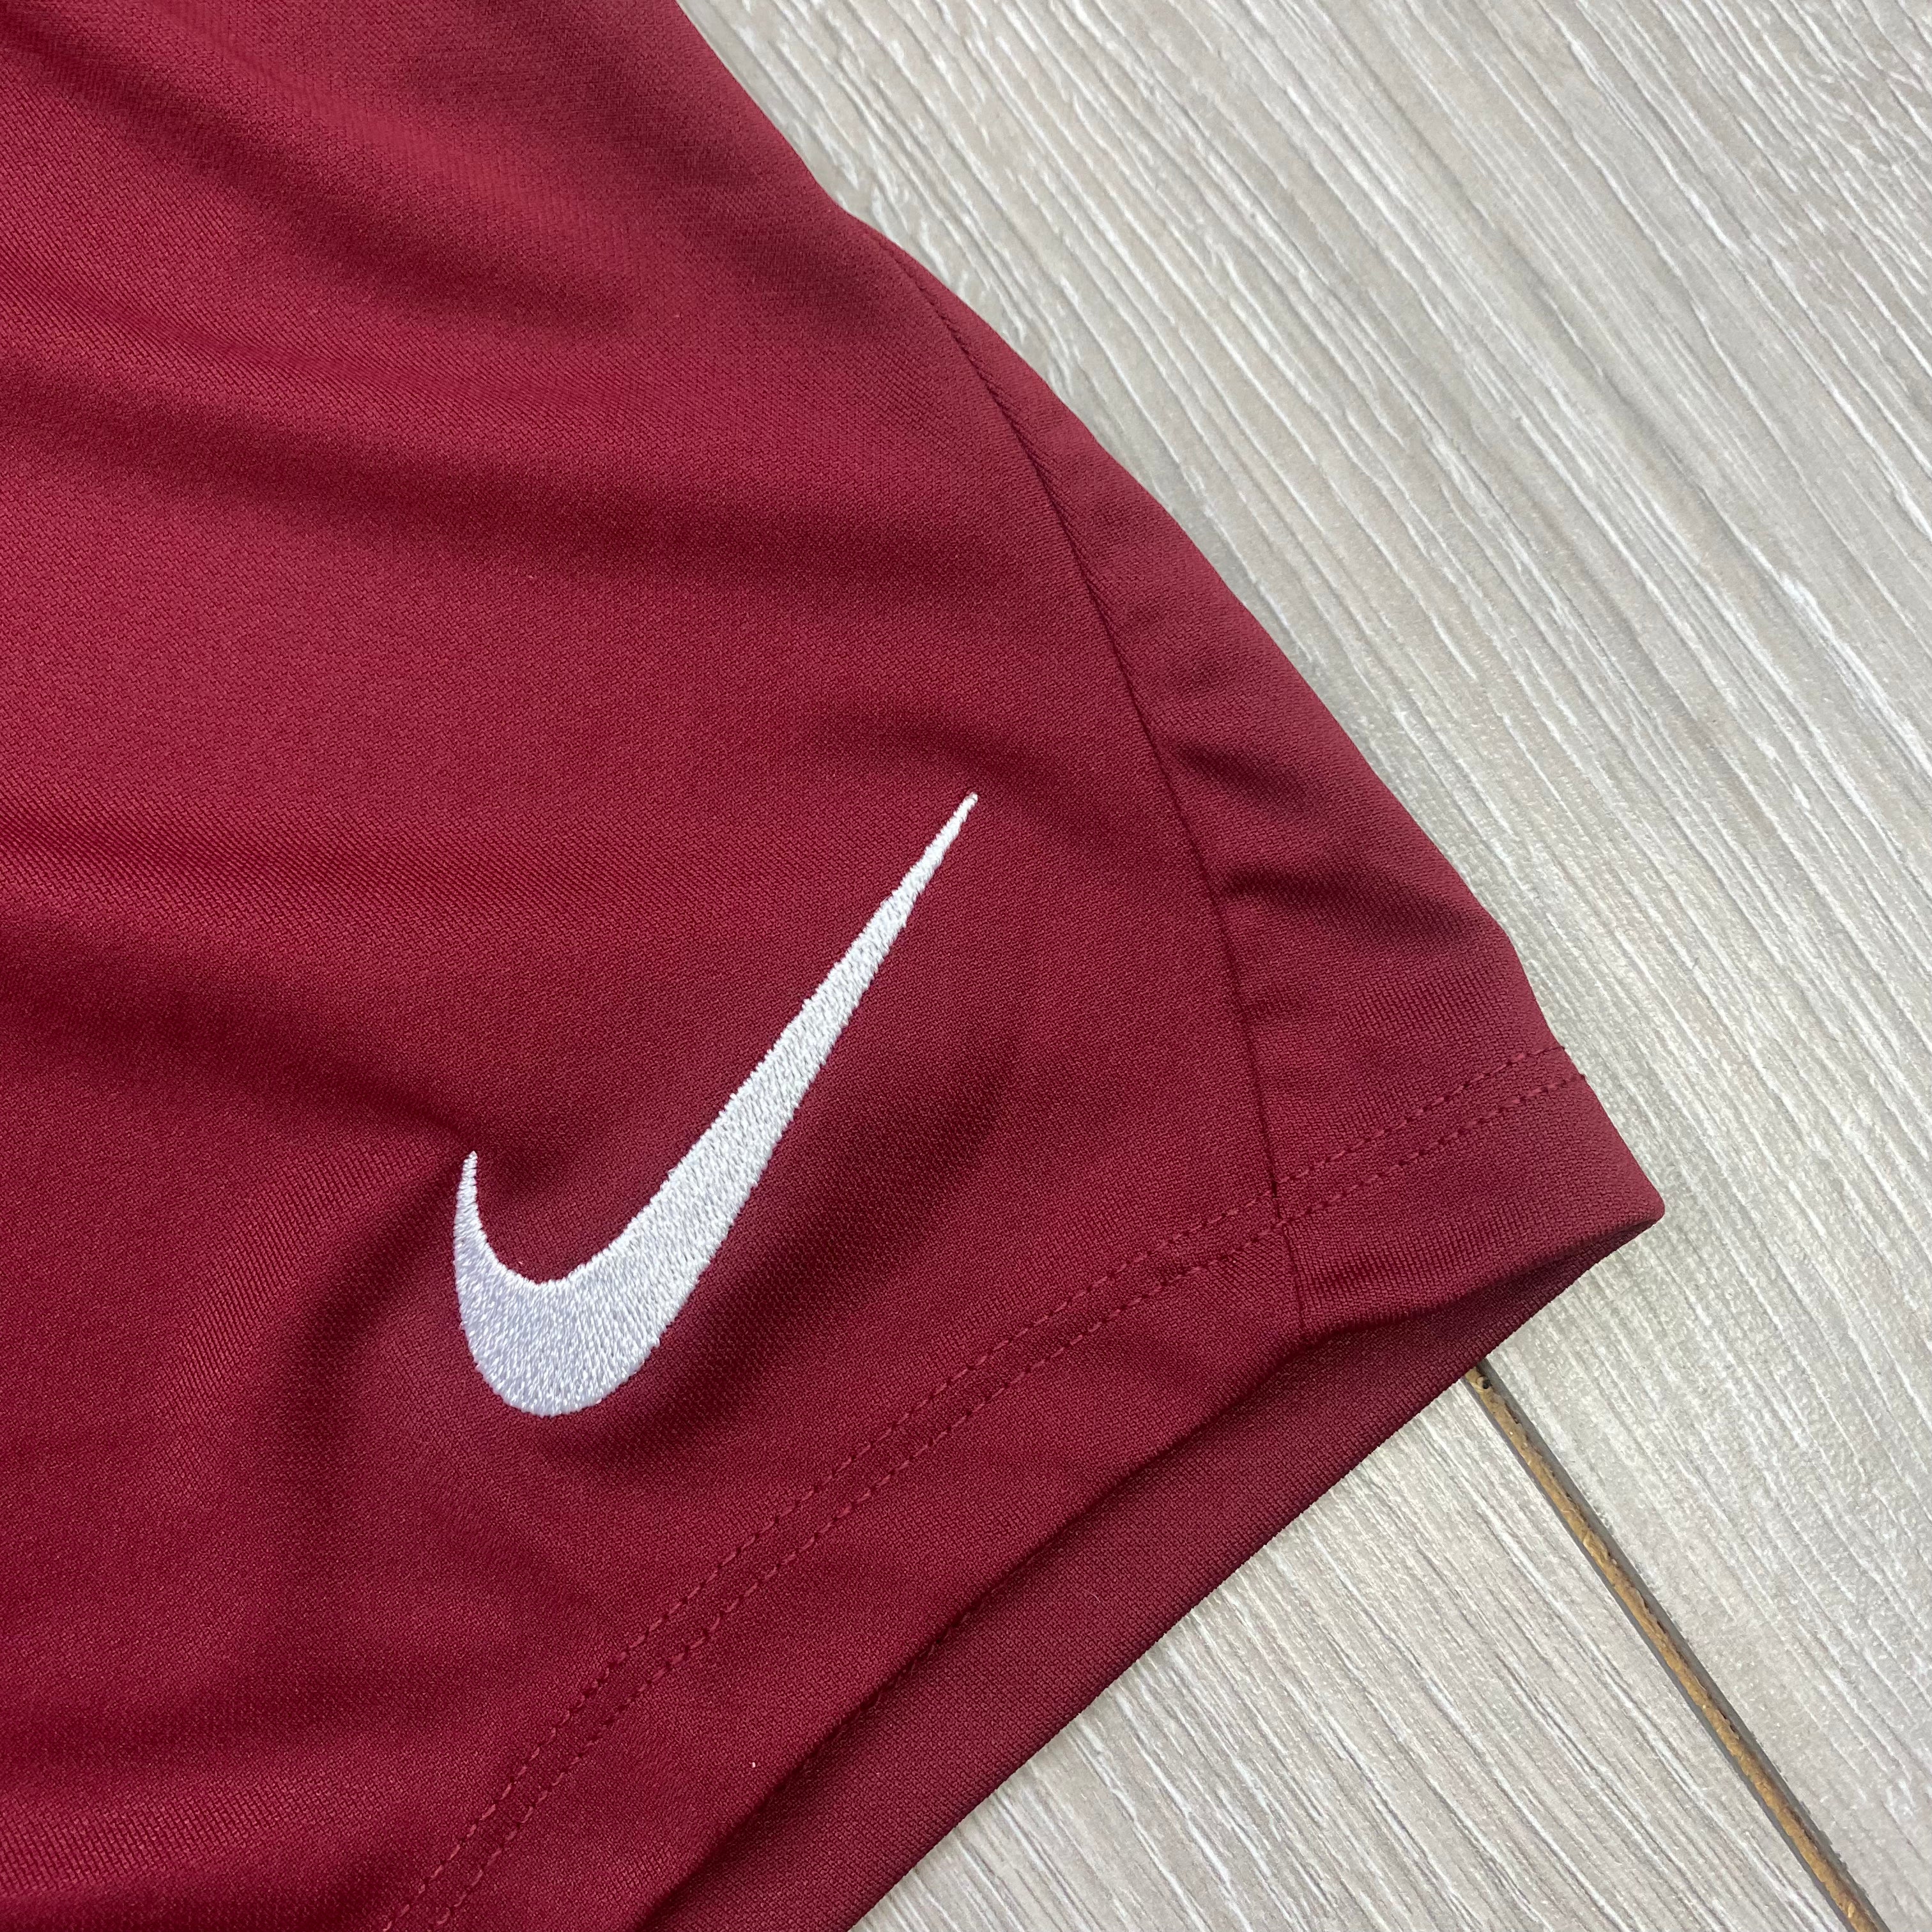 Nike Dri-Fit Shorts - Maroon